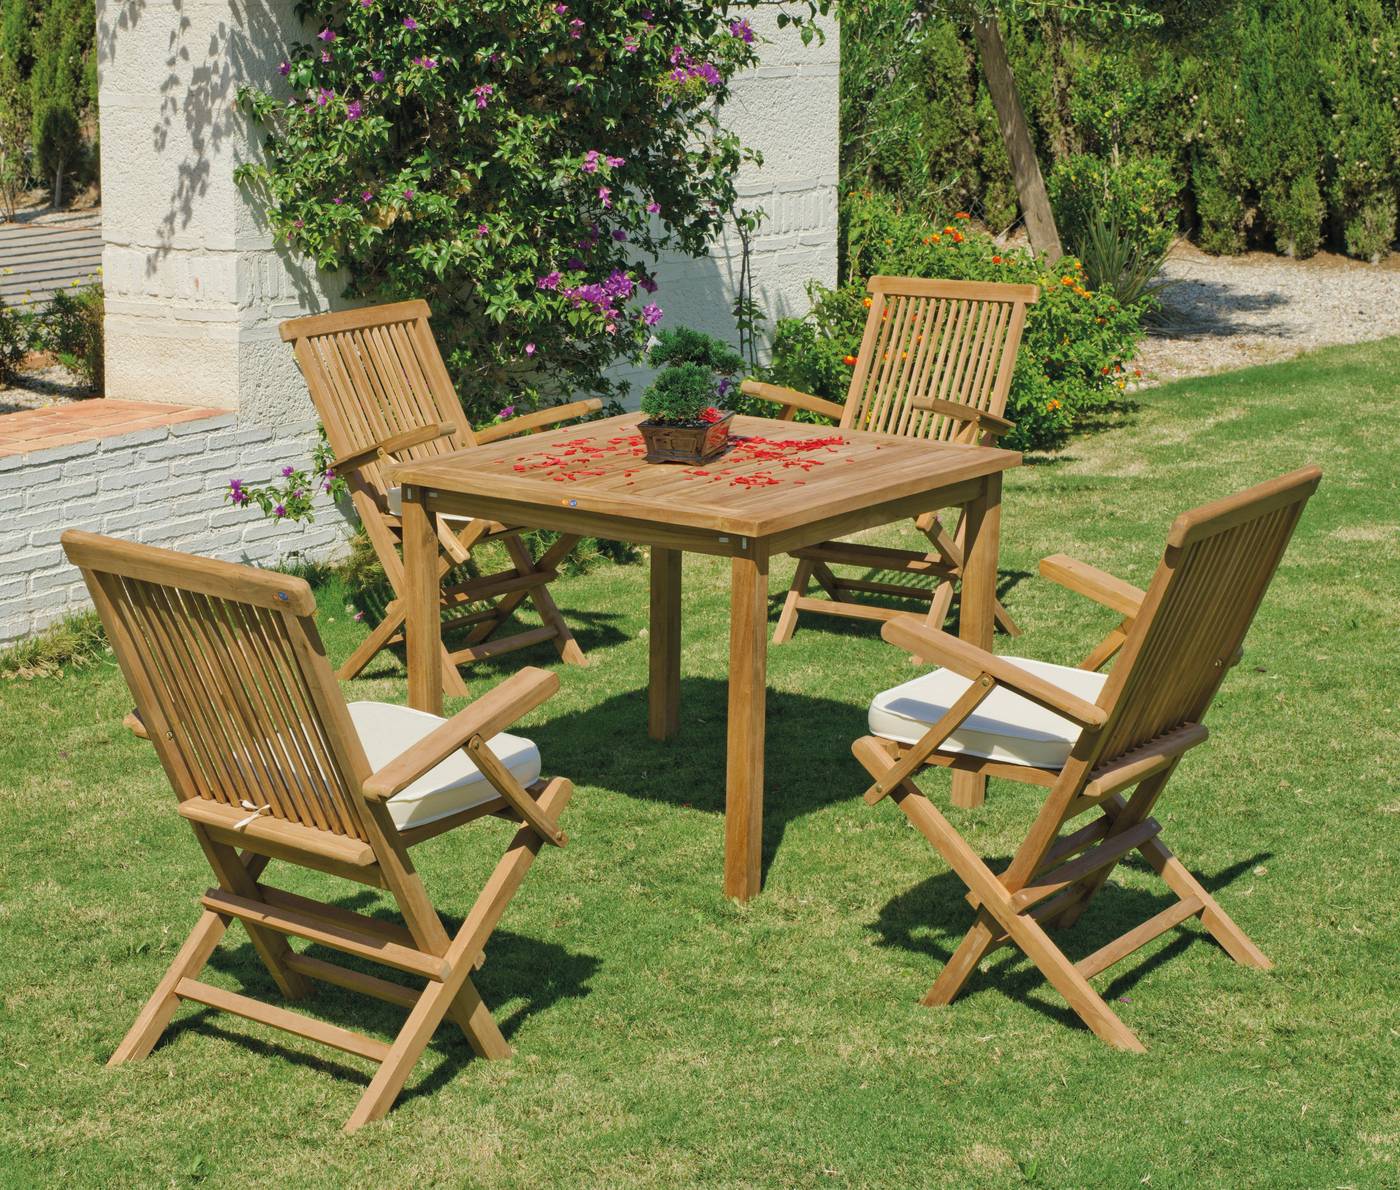 Conjunto de madera de teka maciza para jardín: 1 mesa + 4 sillones + 4 cojines en dralón